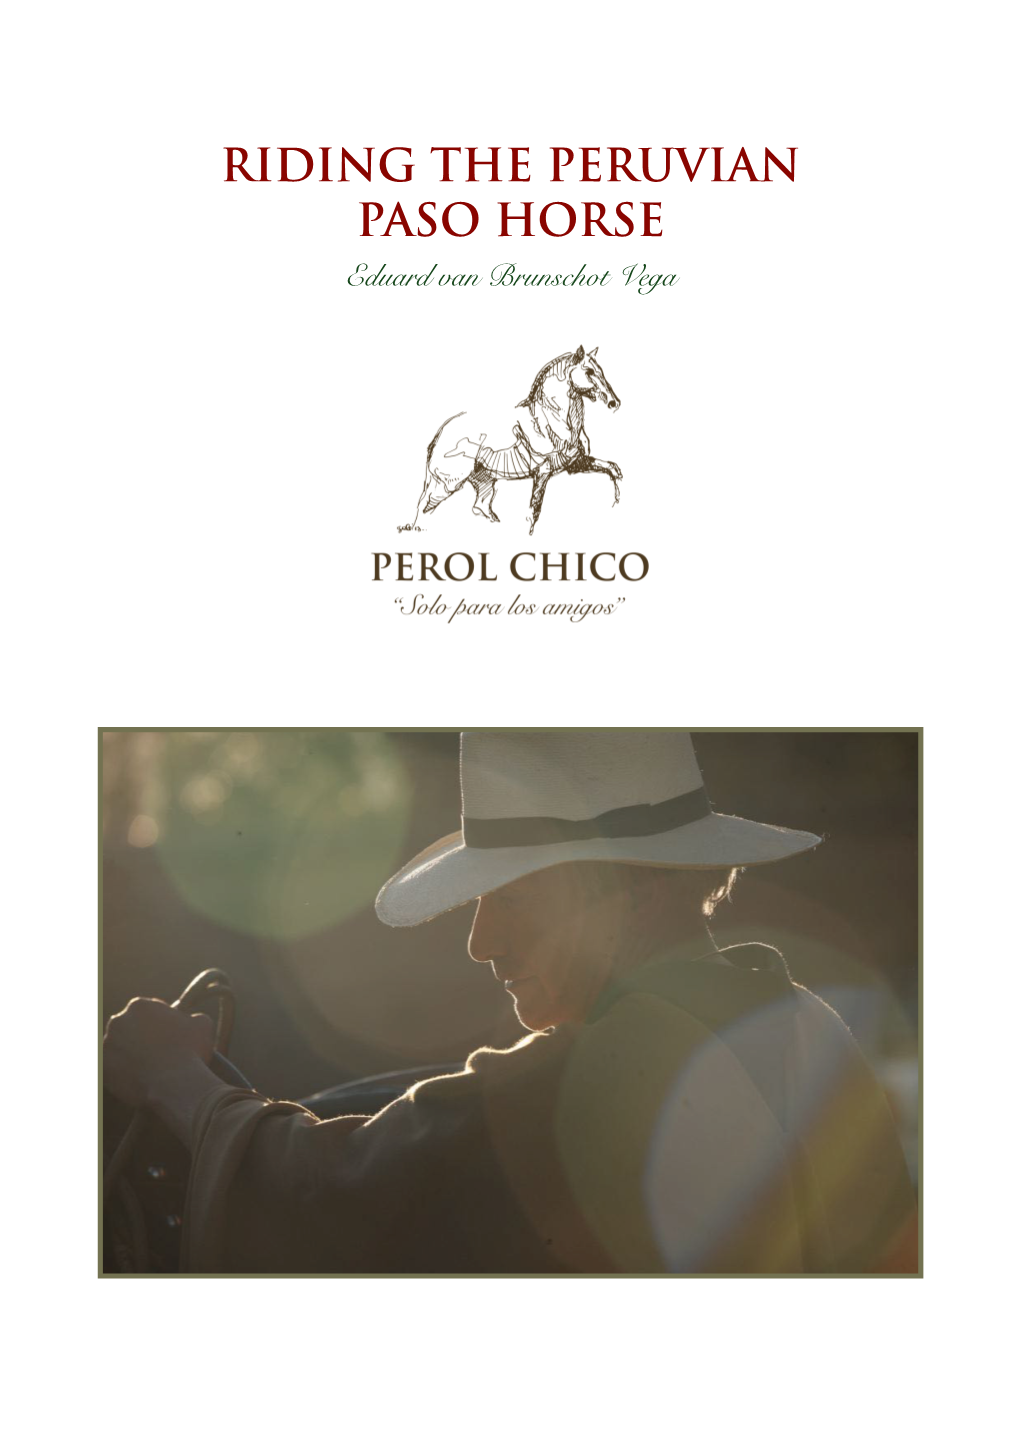 RIDING the PERUVIAN PASO HORSE Eduard Van Brunschot Vega INTRODUCTION